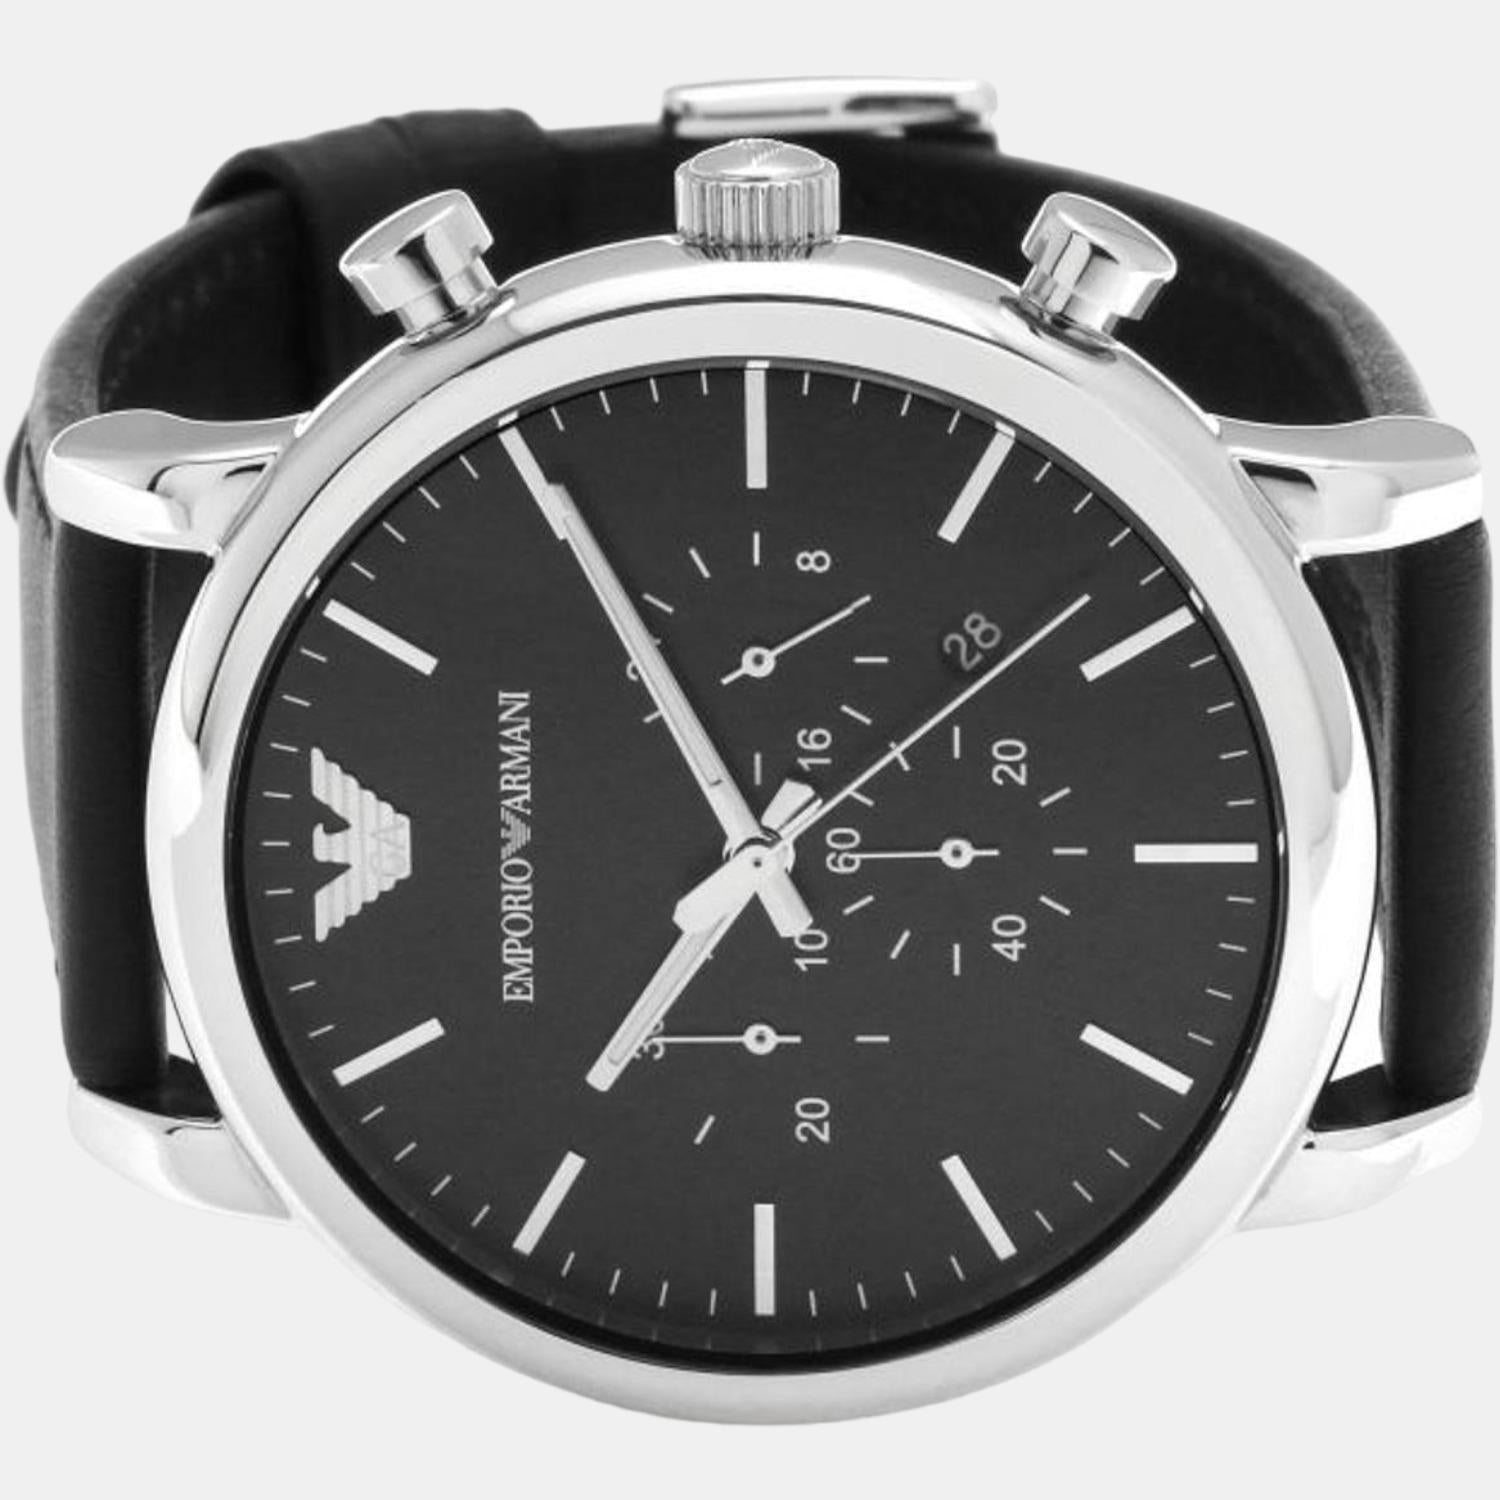 Emporio Armani Just – In Armani Chronograph | Quartz Leather Male Watch Black Emporio Time